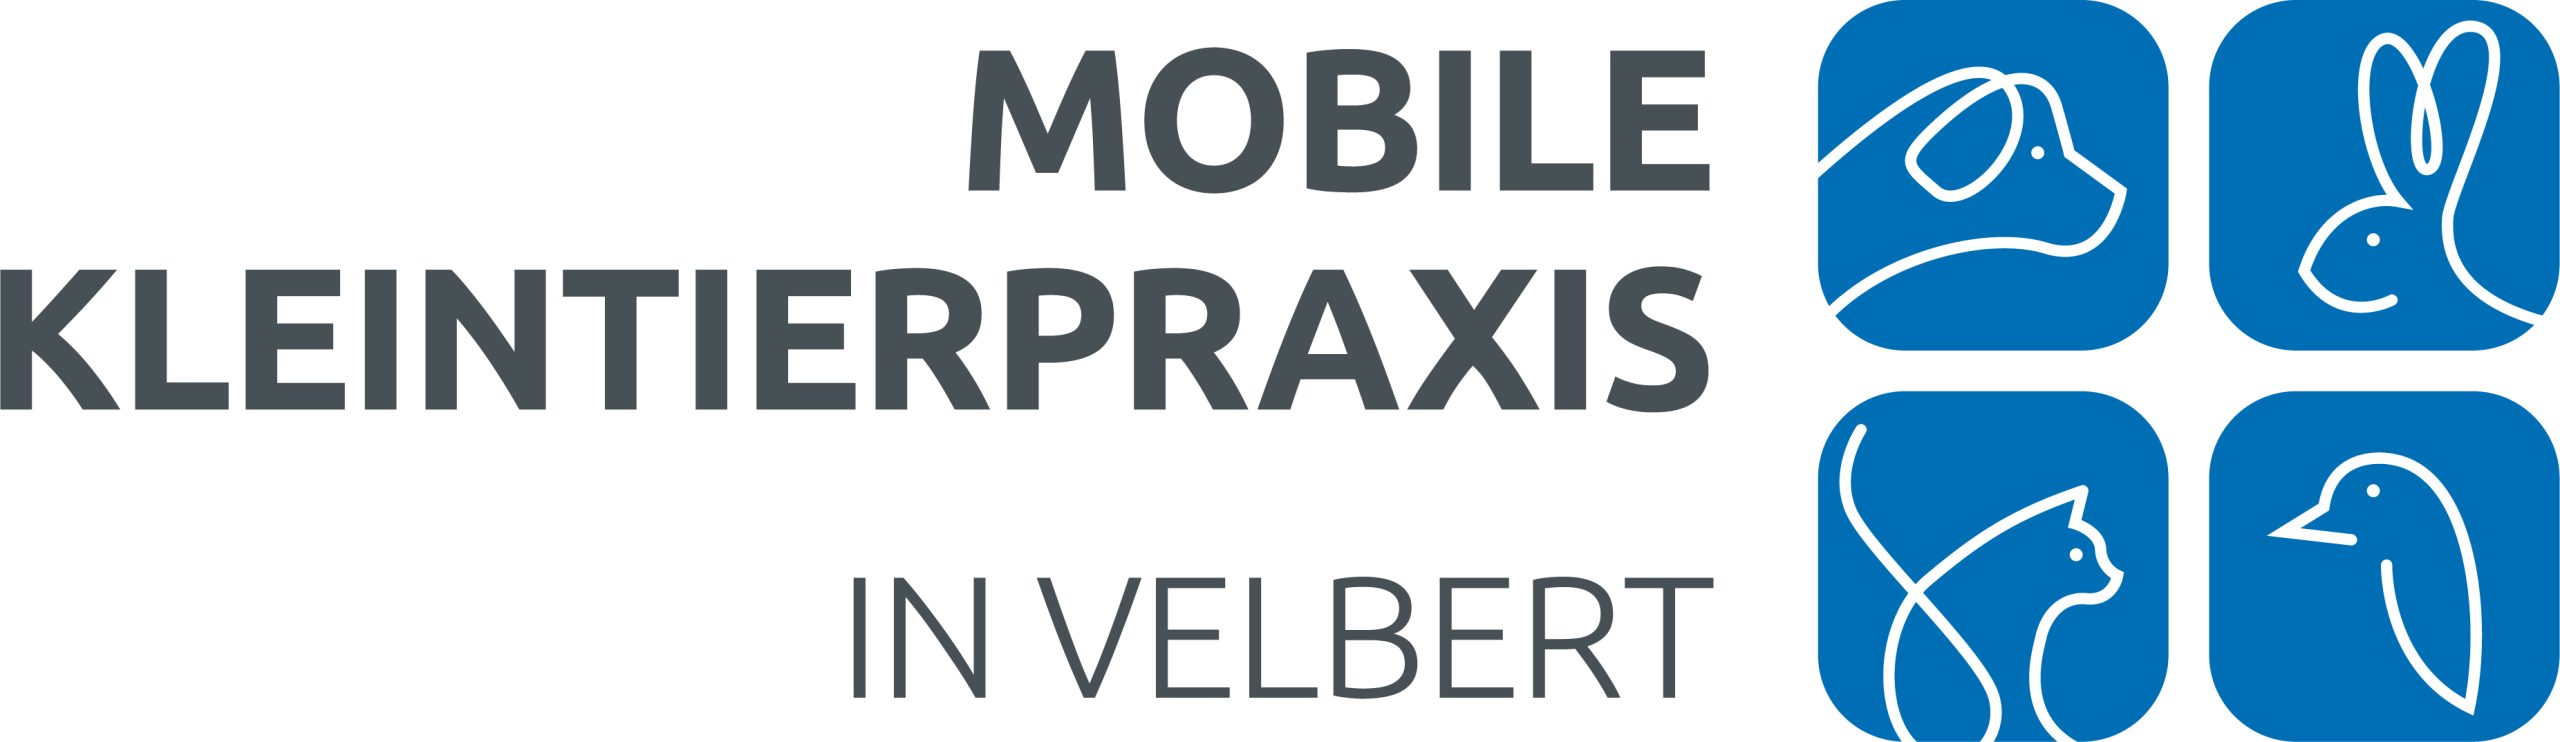 Mobile Kleintierpraxis in Velbert